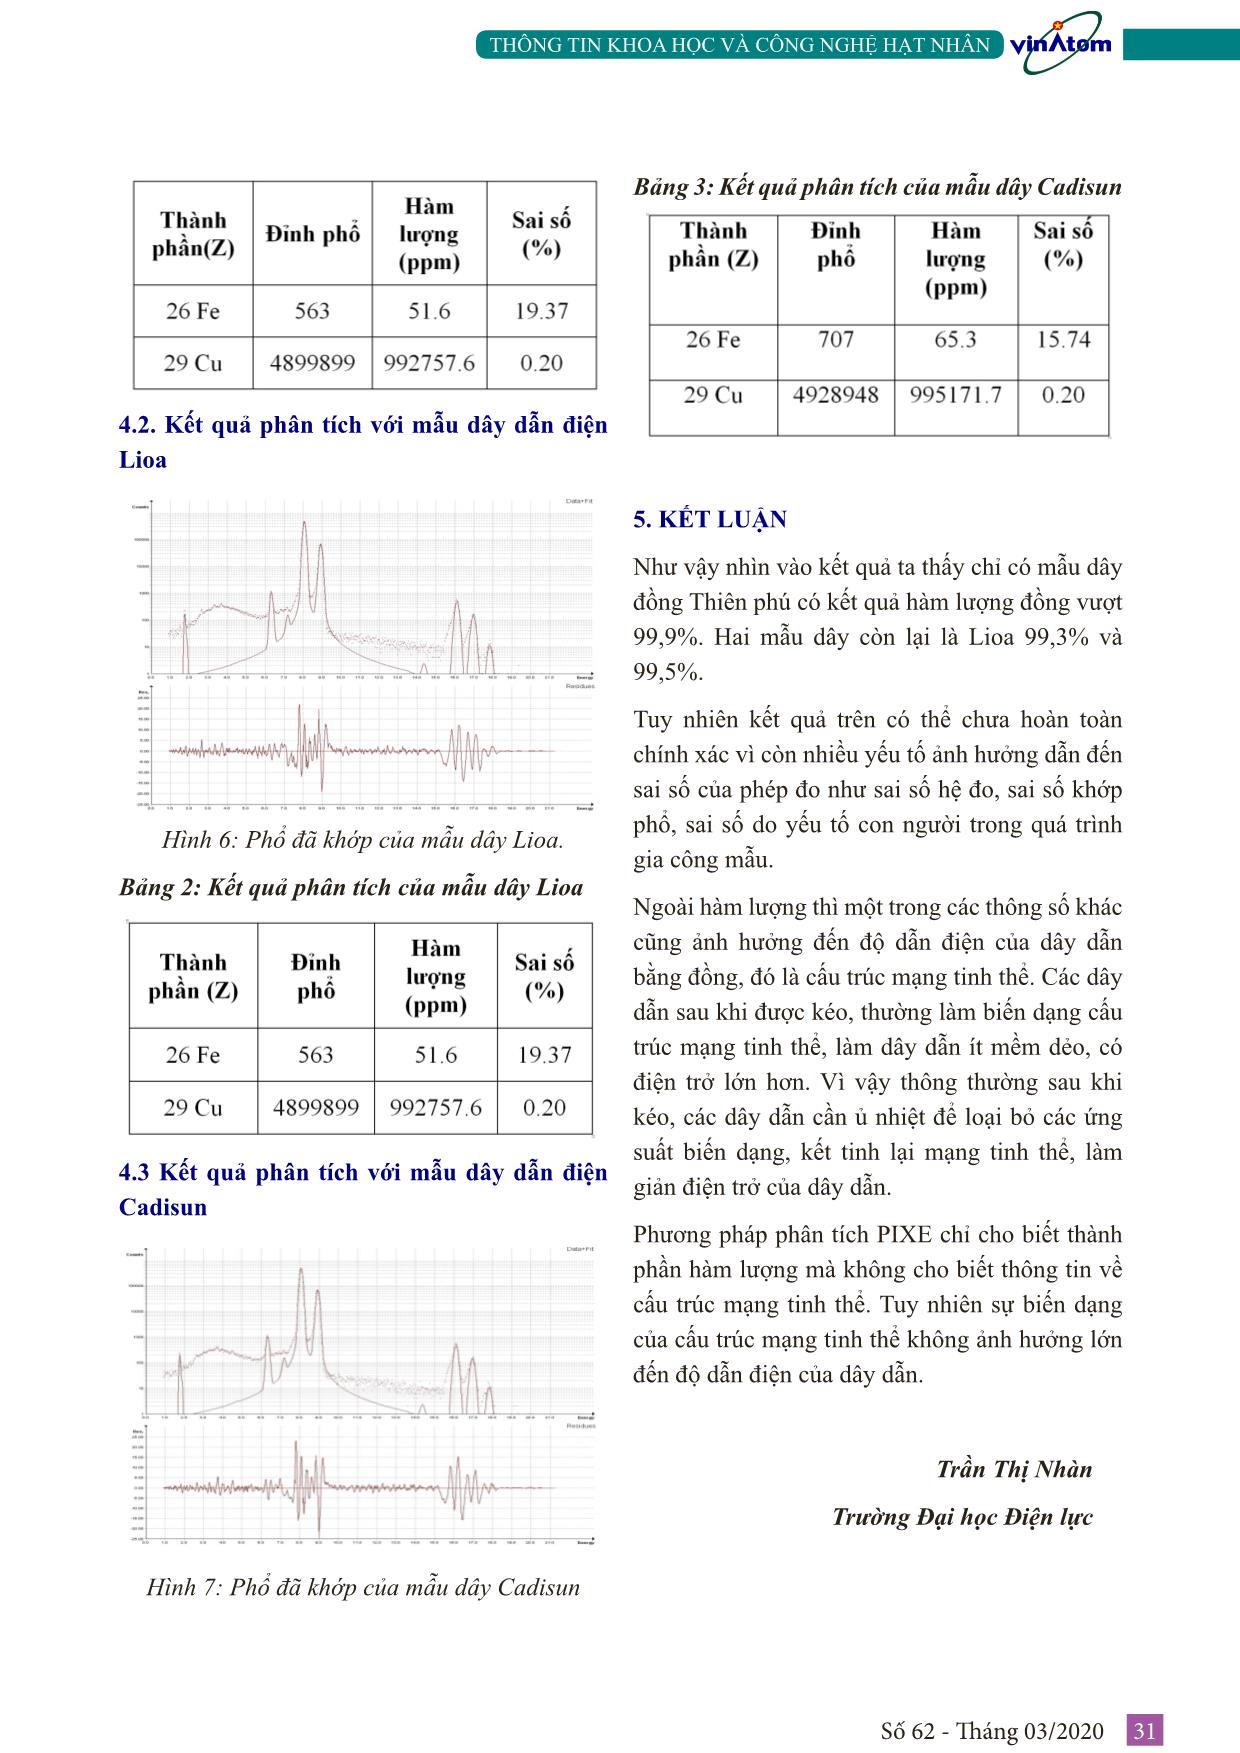 Đánh giá chất lượng của một vài loại dây dẫn điện phổ biến ở Việt Nam bằng phân tích pixe trang 4